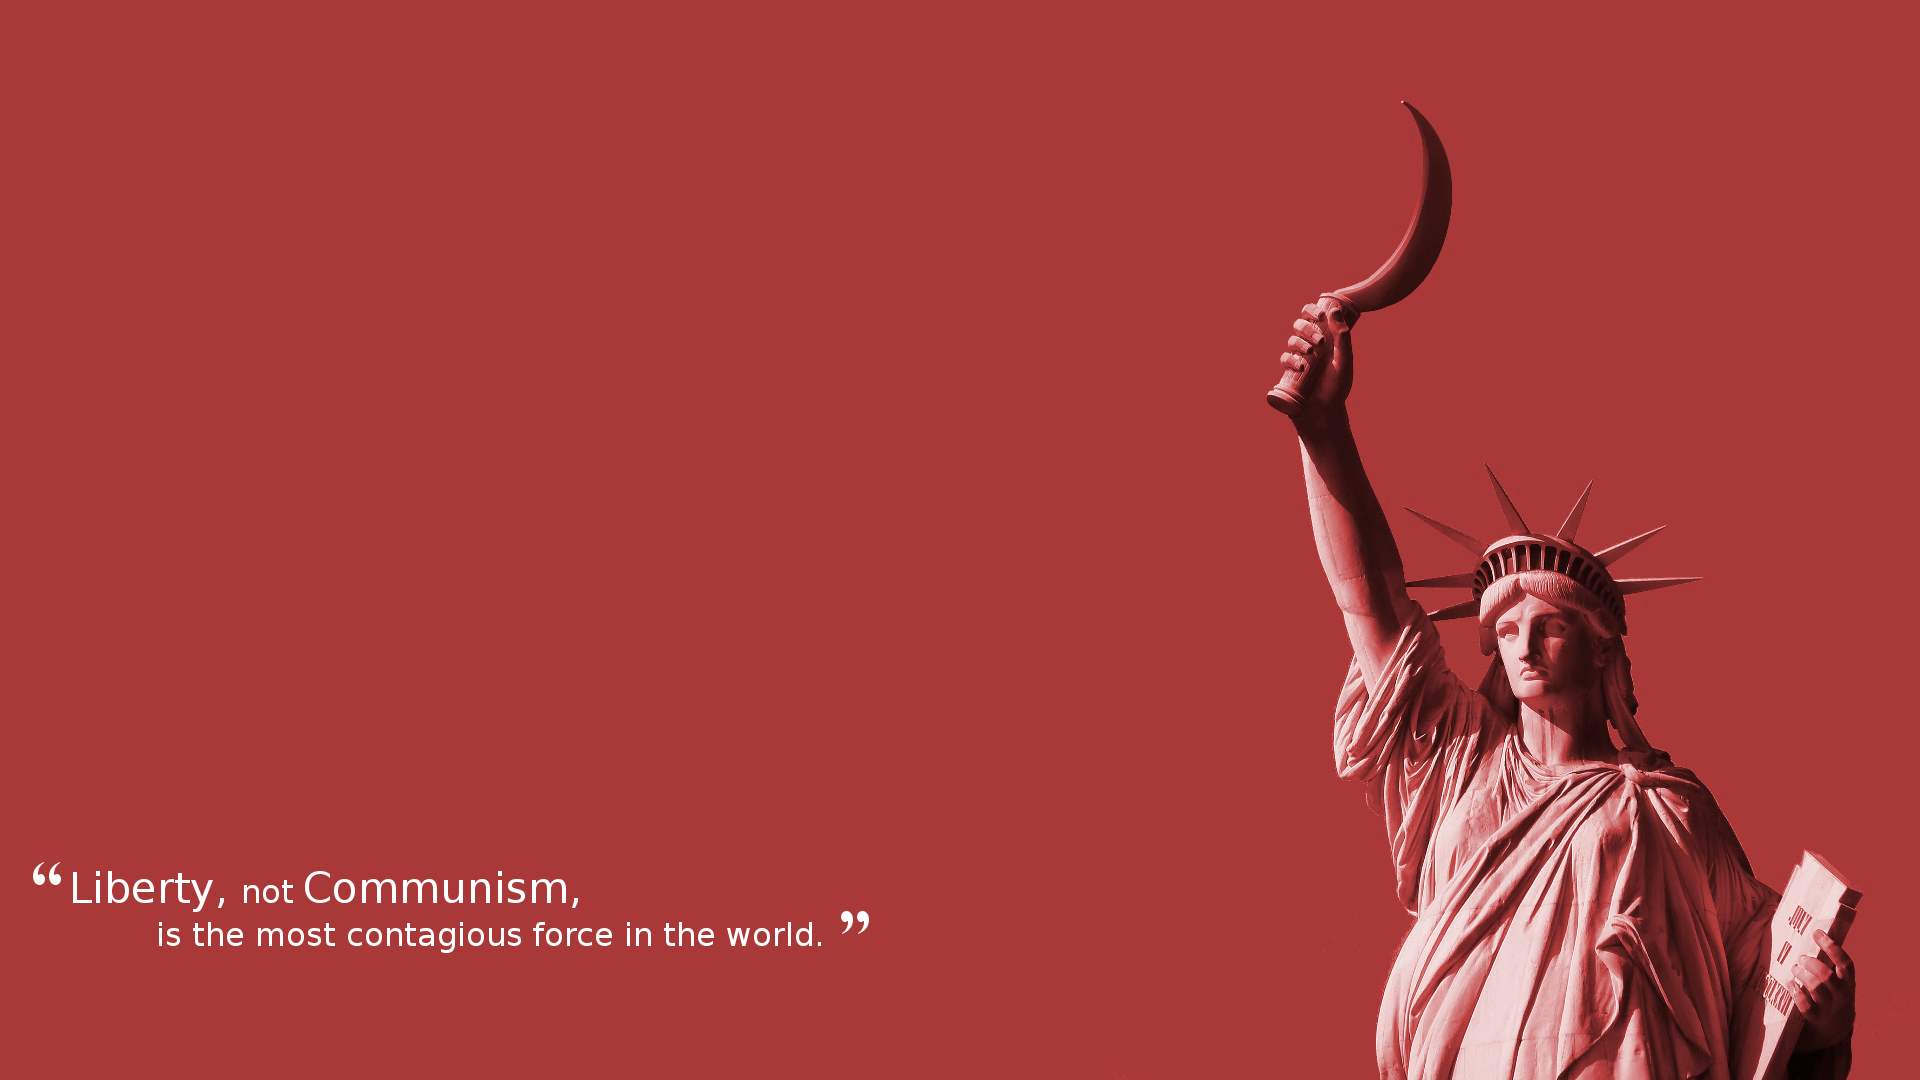 Communism quote